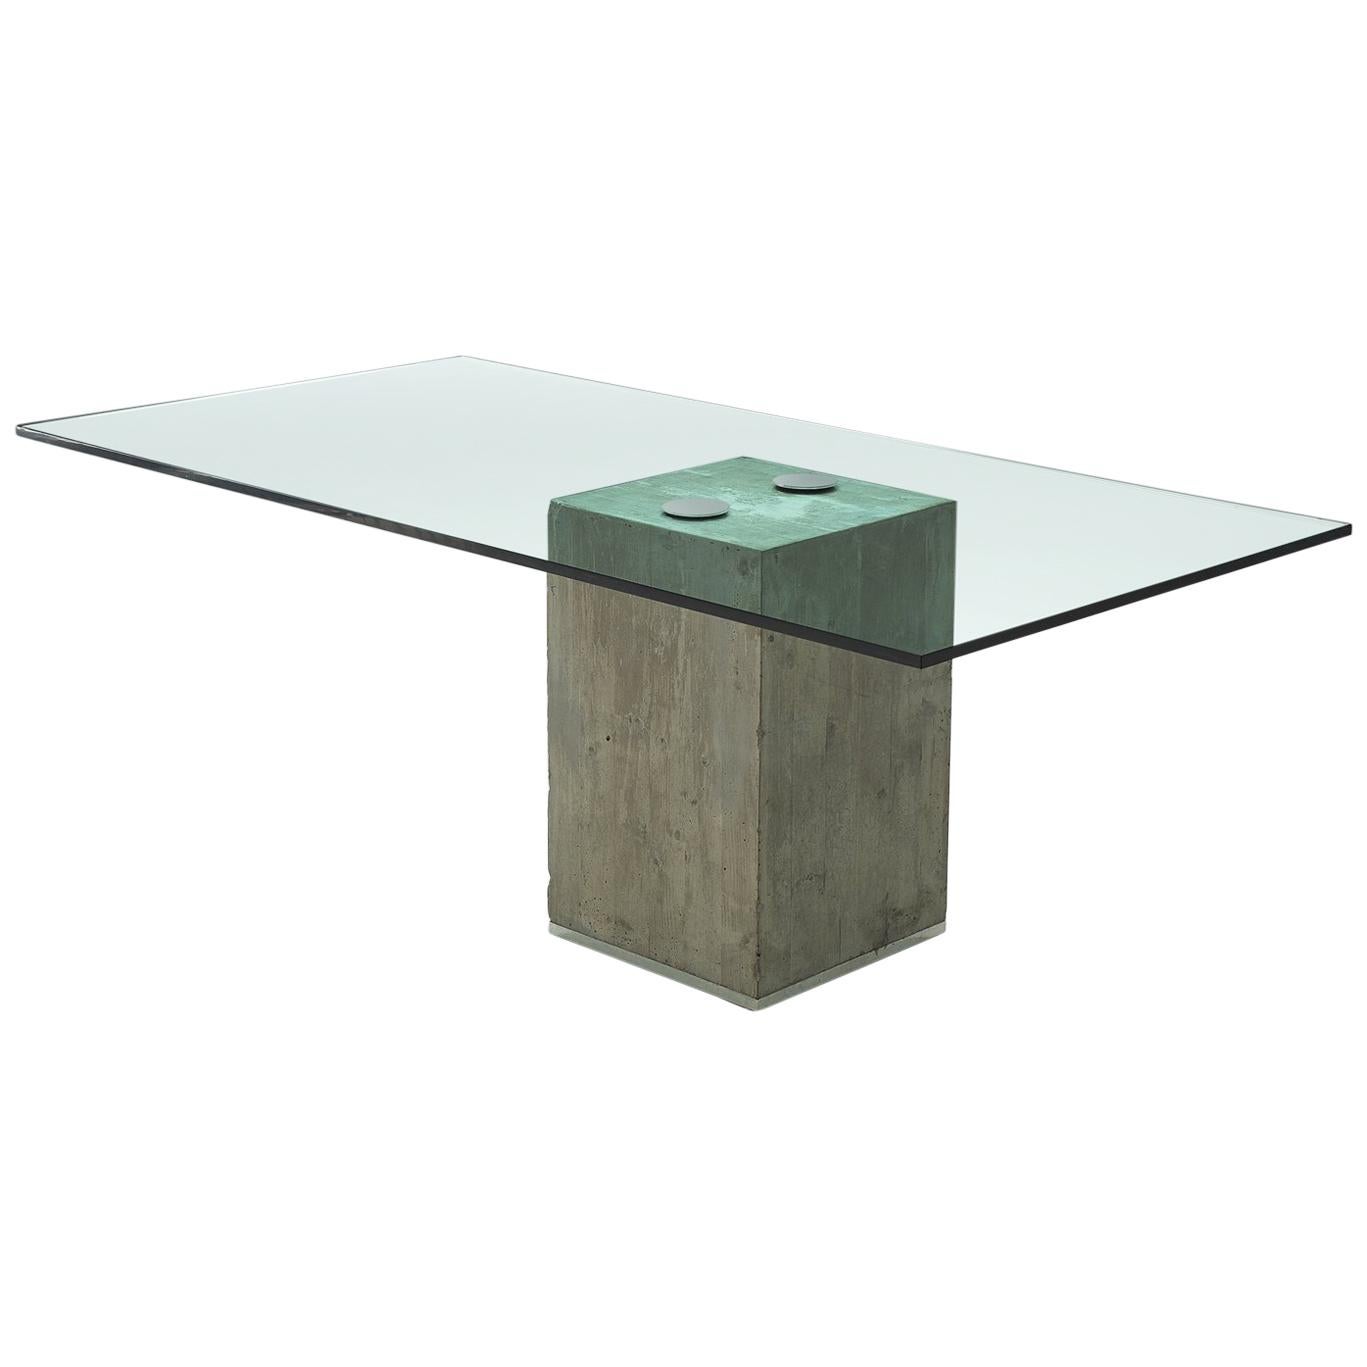 Sergio & Giorgio Saporiti Dining Table in Glass and Concrete